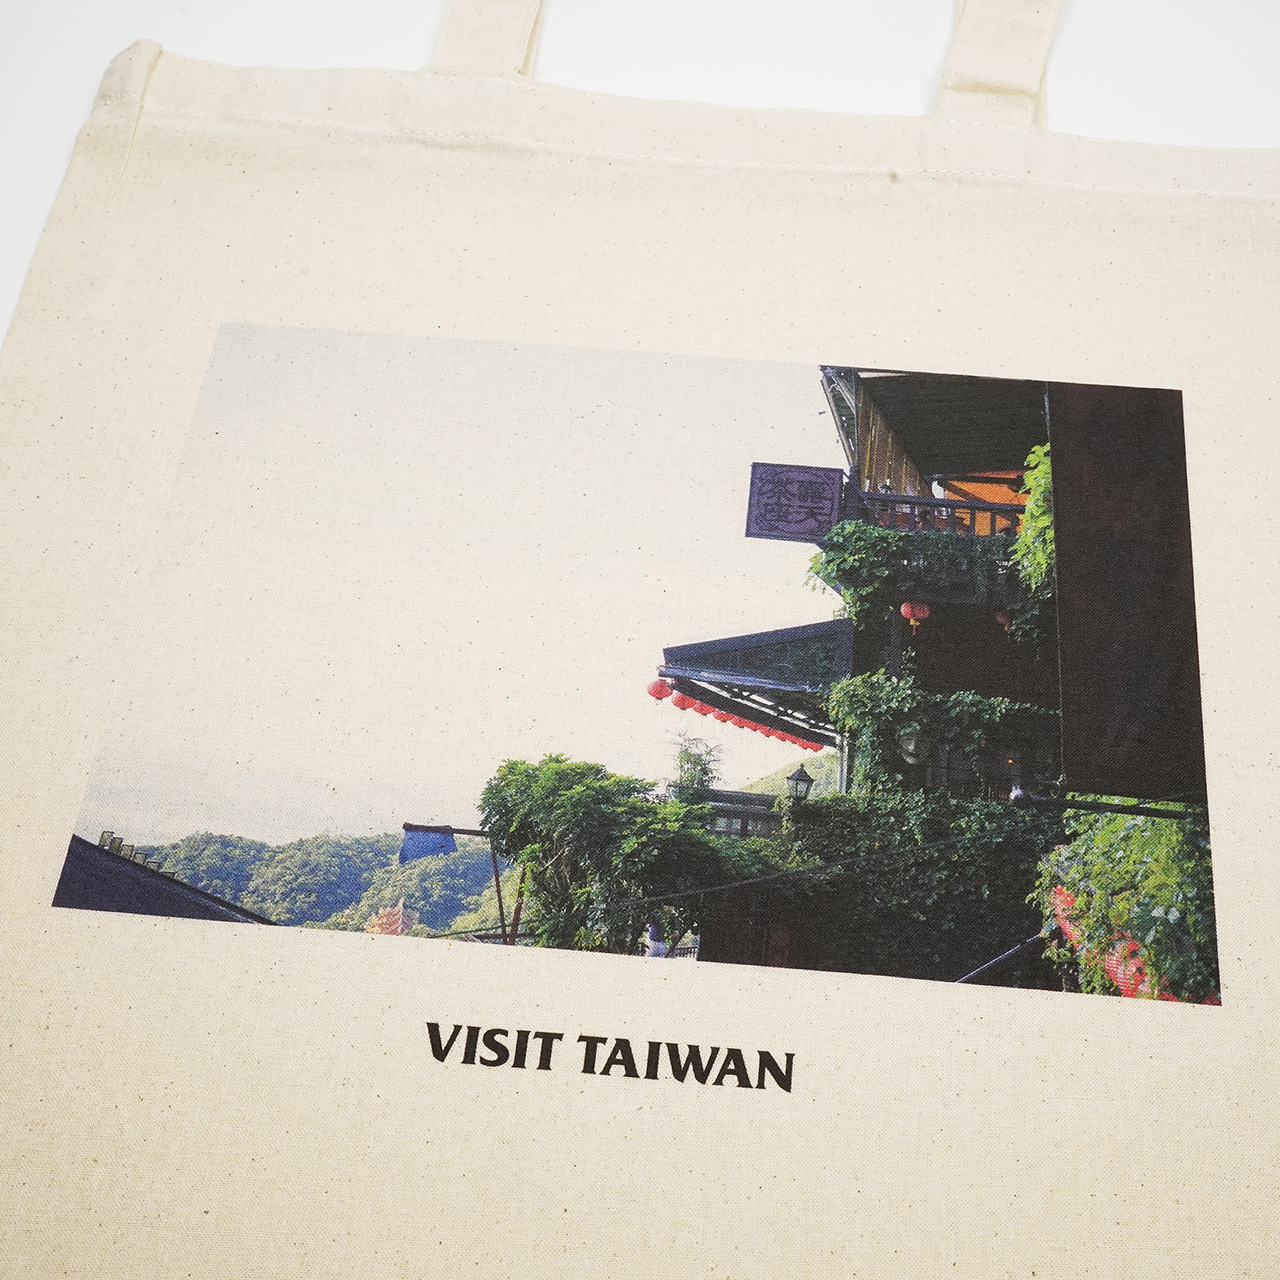 ガーメントプリンターで印刷した台湾をイメージしたプリントのトートバッグ